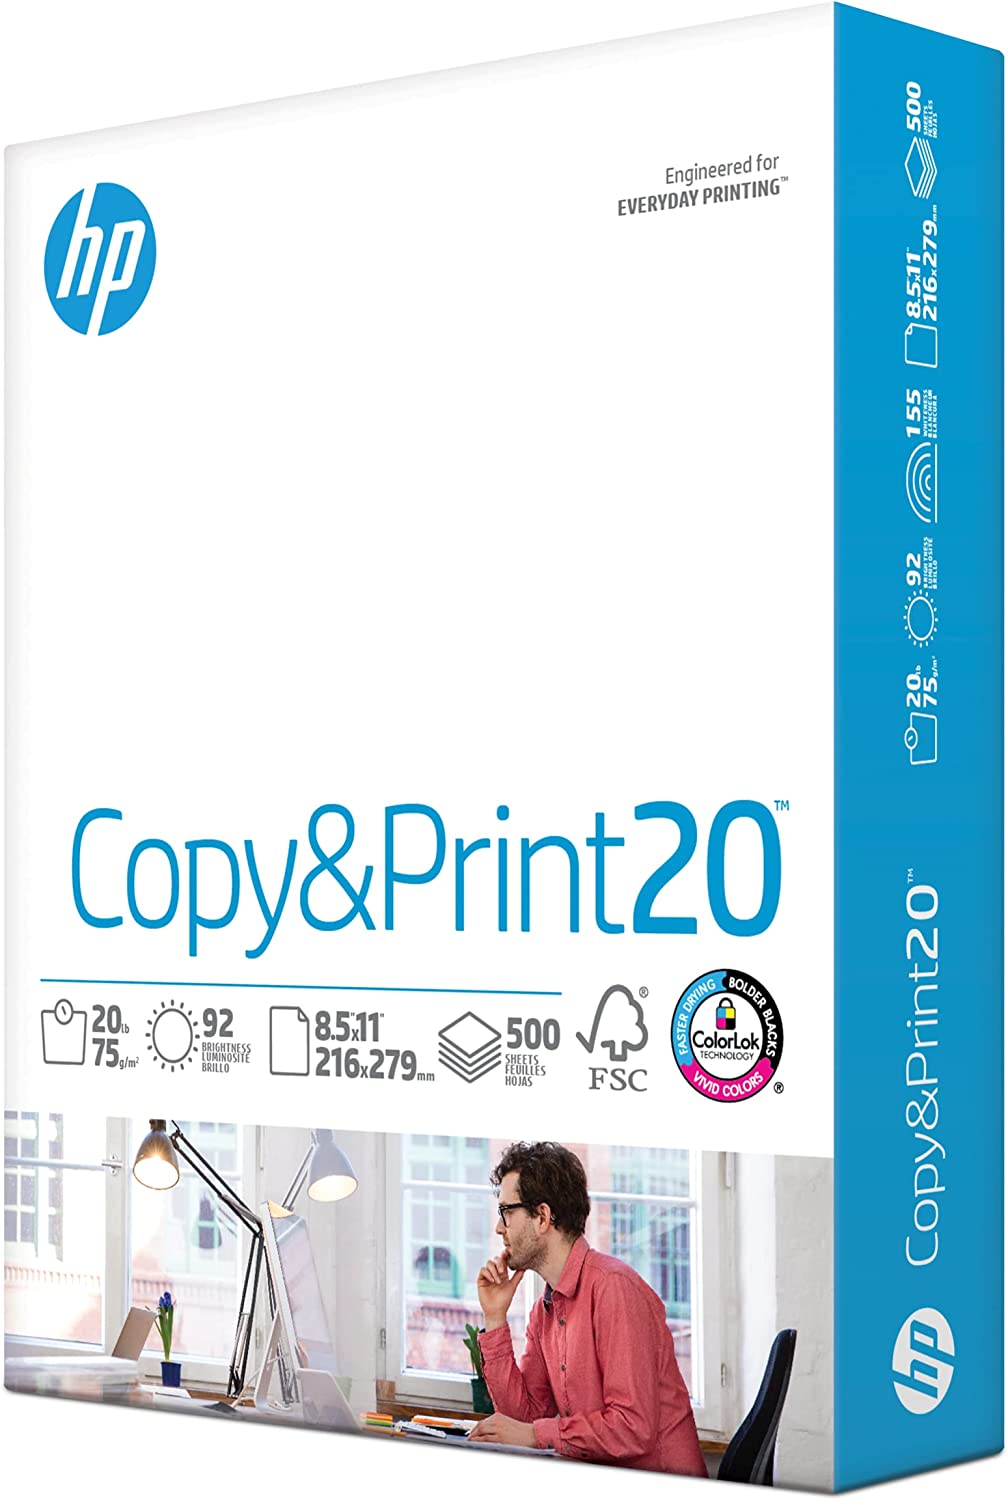 HP Printer Paper | 8.5 x 11 Paper | Copy &Print 20 lb [...]